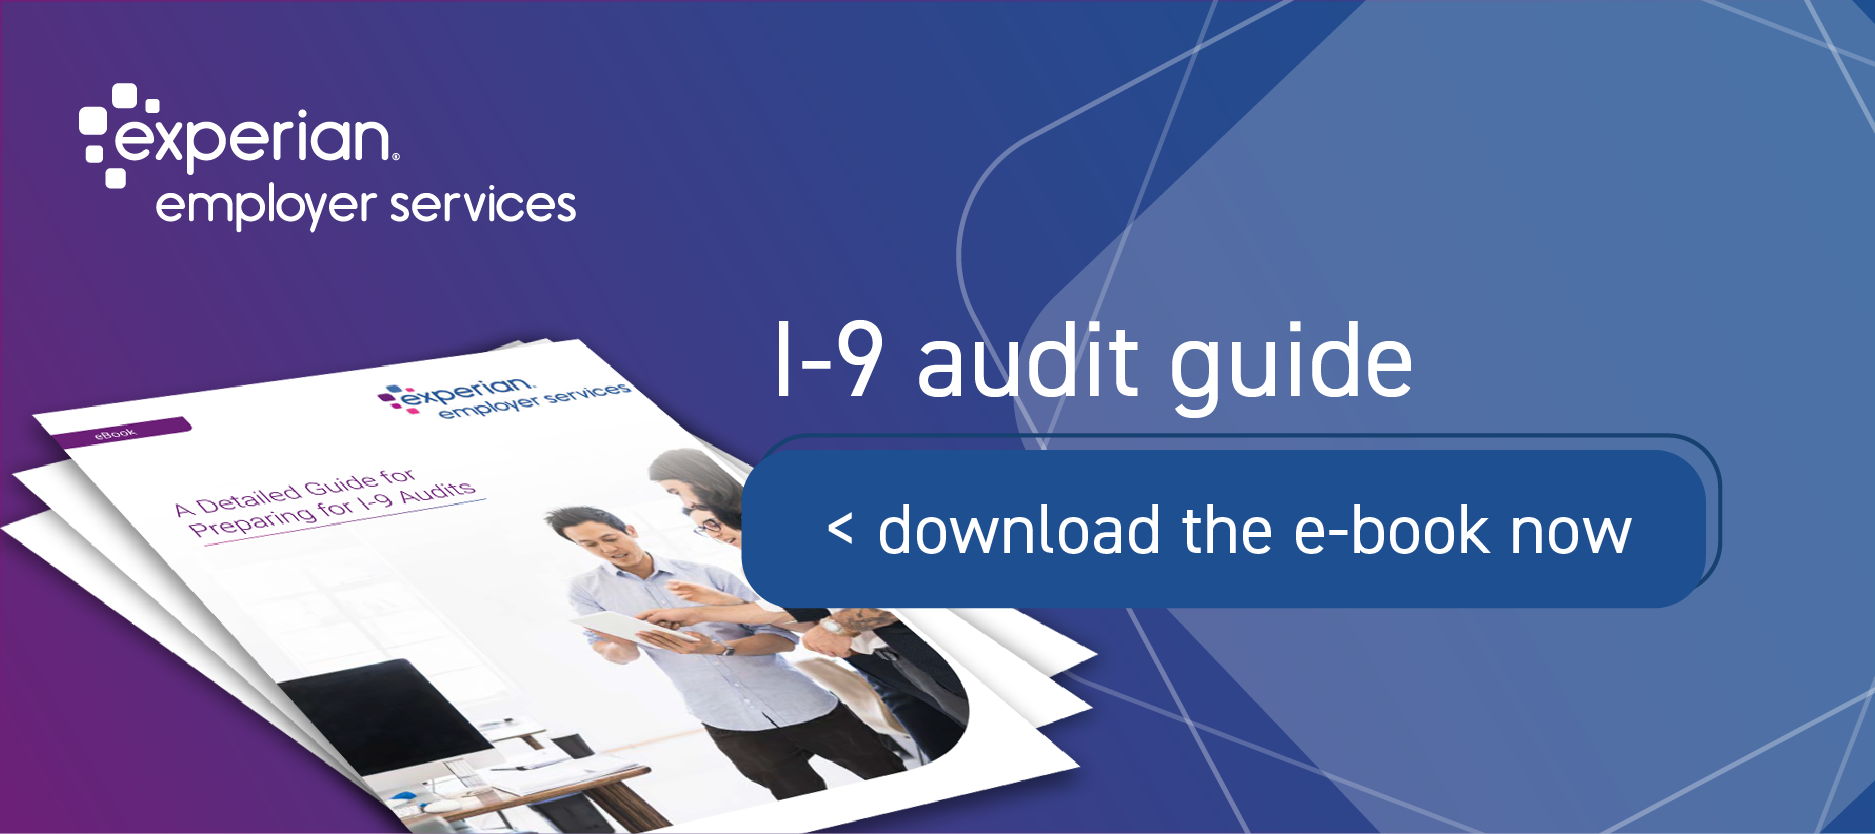 I-9 Audit Guide E-Book Banner Image